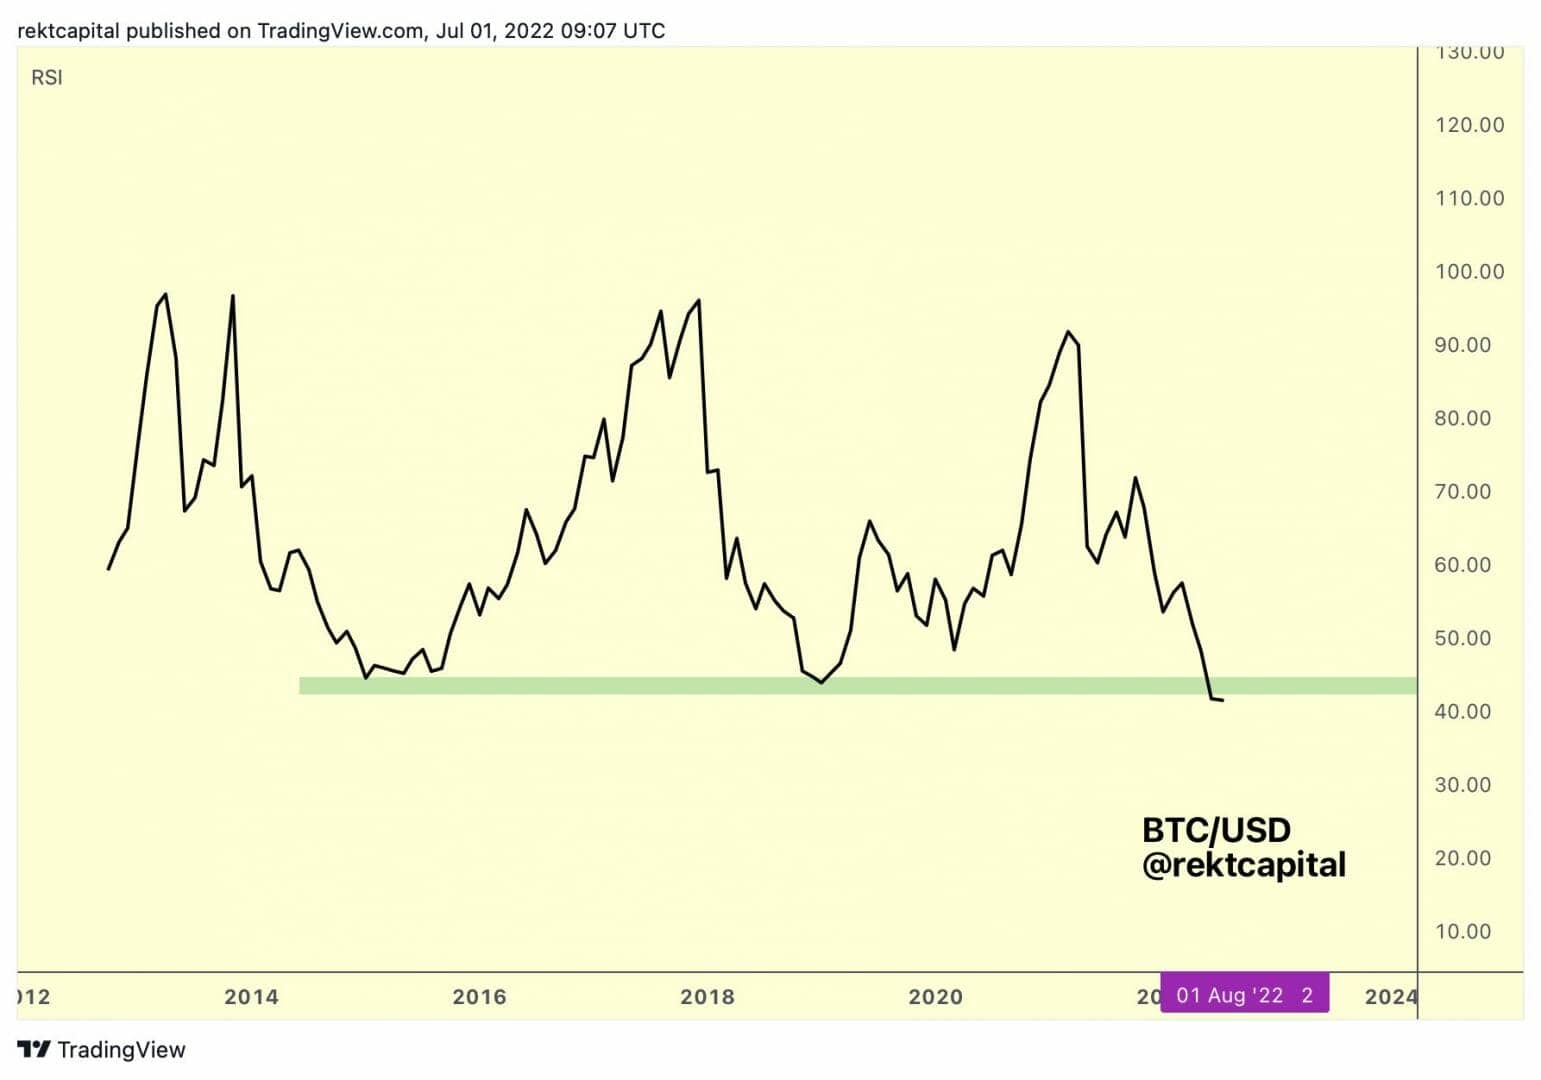 Le RSI mensuel de Bitcoin à un niveau historiquement bas.